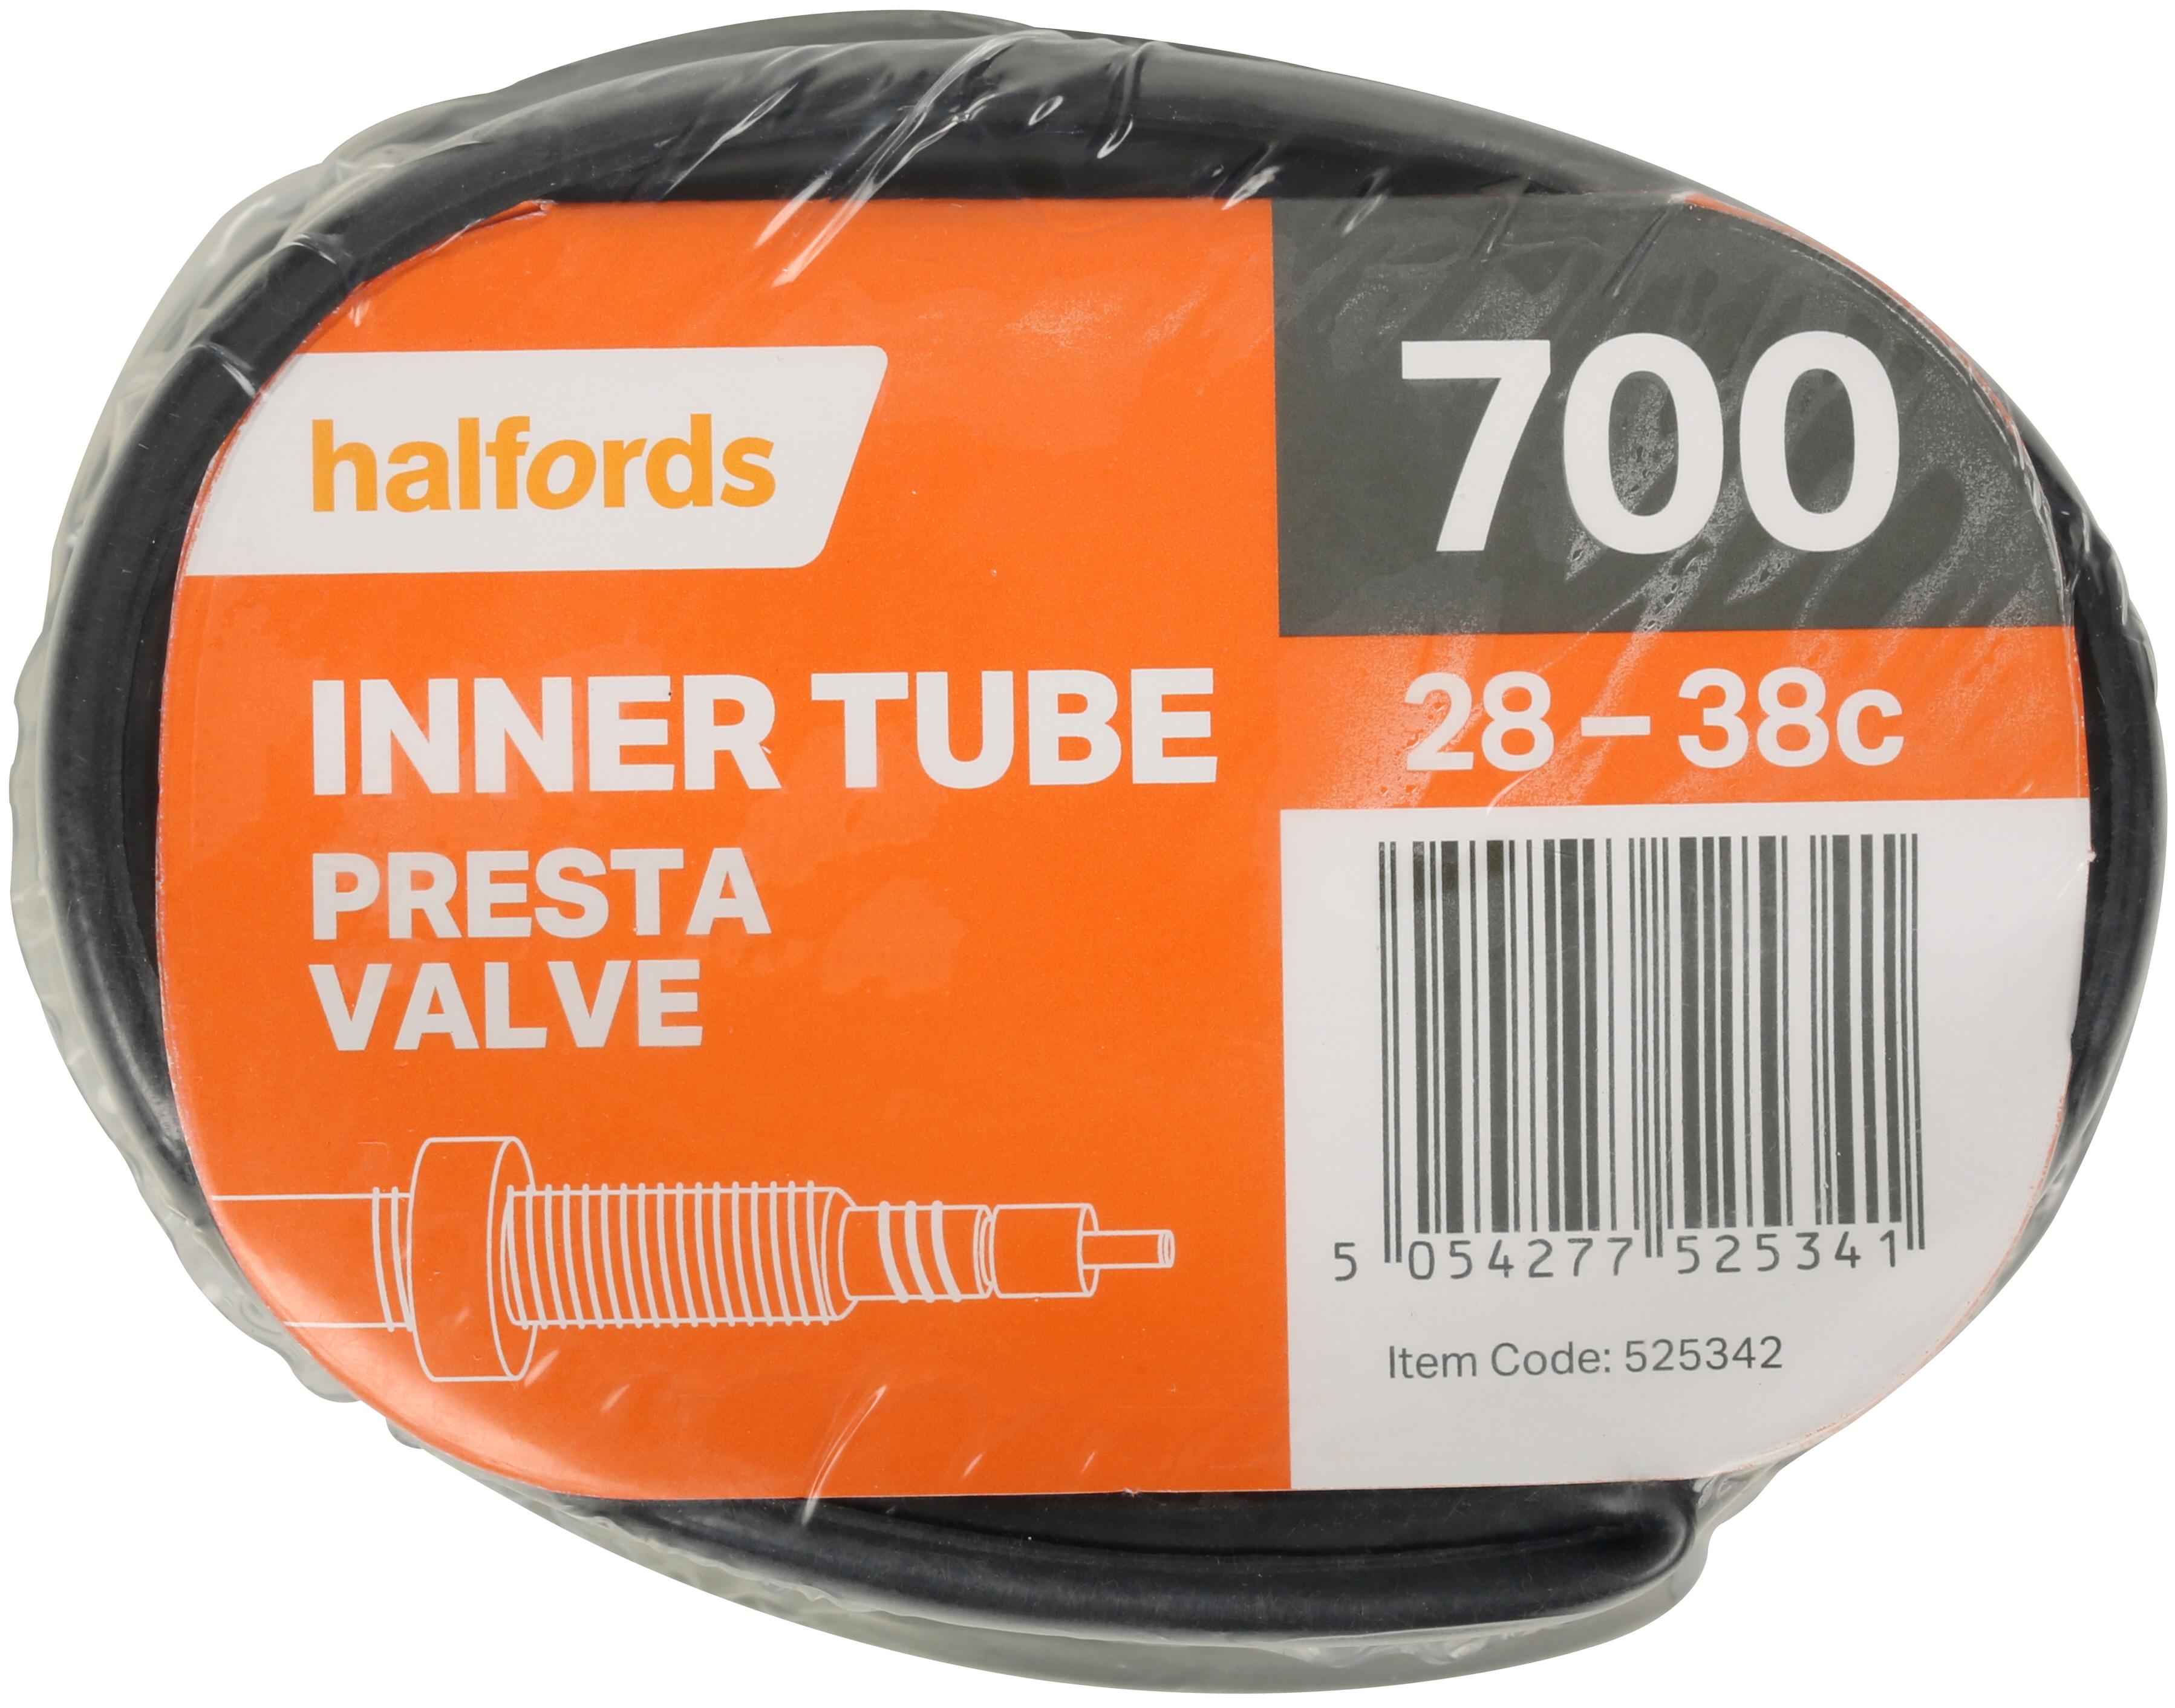 700c inner tube